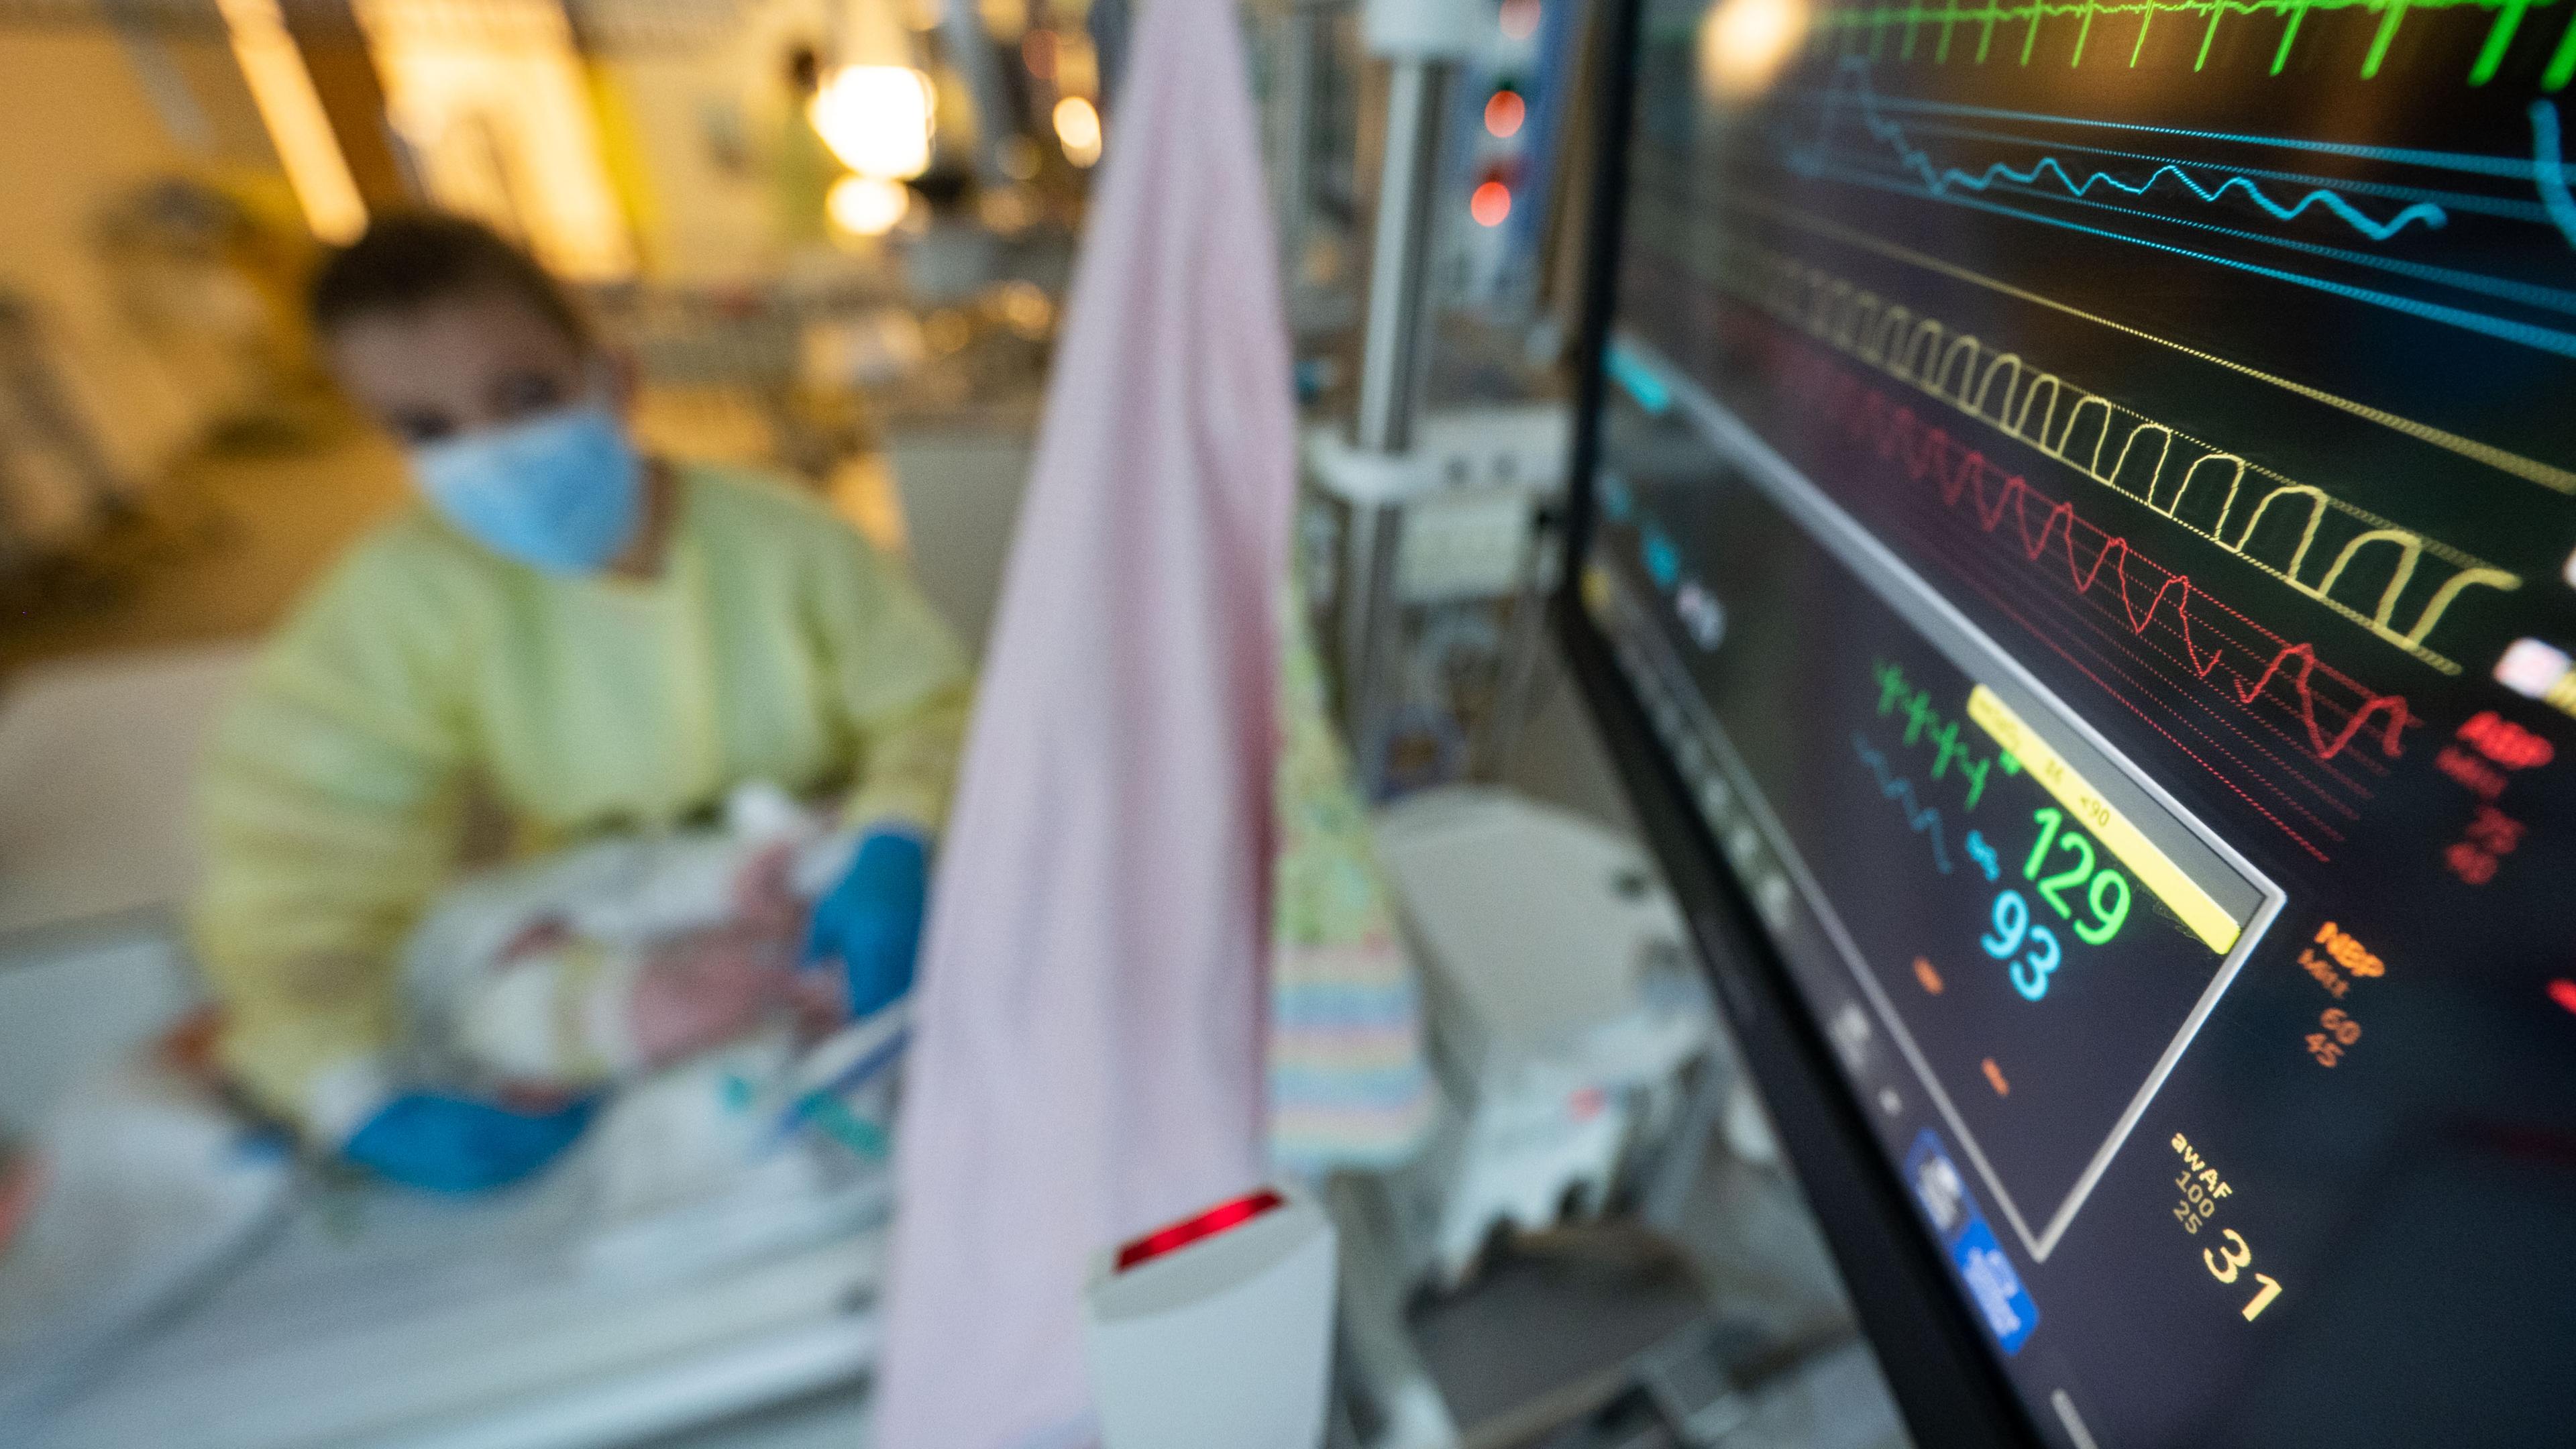 Eine Intensivpflegerin versorgt auf der Kinder-Intensivstation des Olgahospitals des Klinkums Stuttgart einen am Respiratorischen Synzytial-Virus (RS-Virus oder RSV) erkrankten Patienten, der beatmet wird.